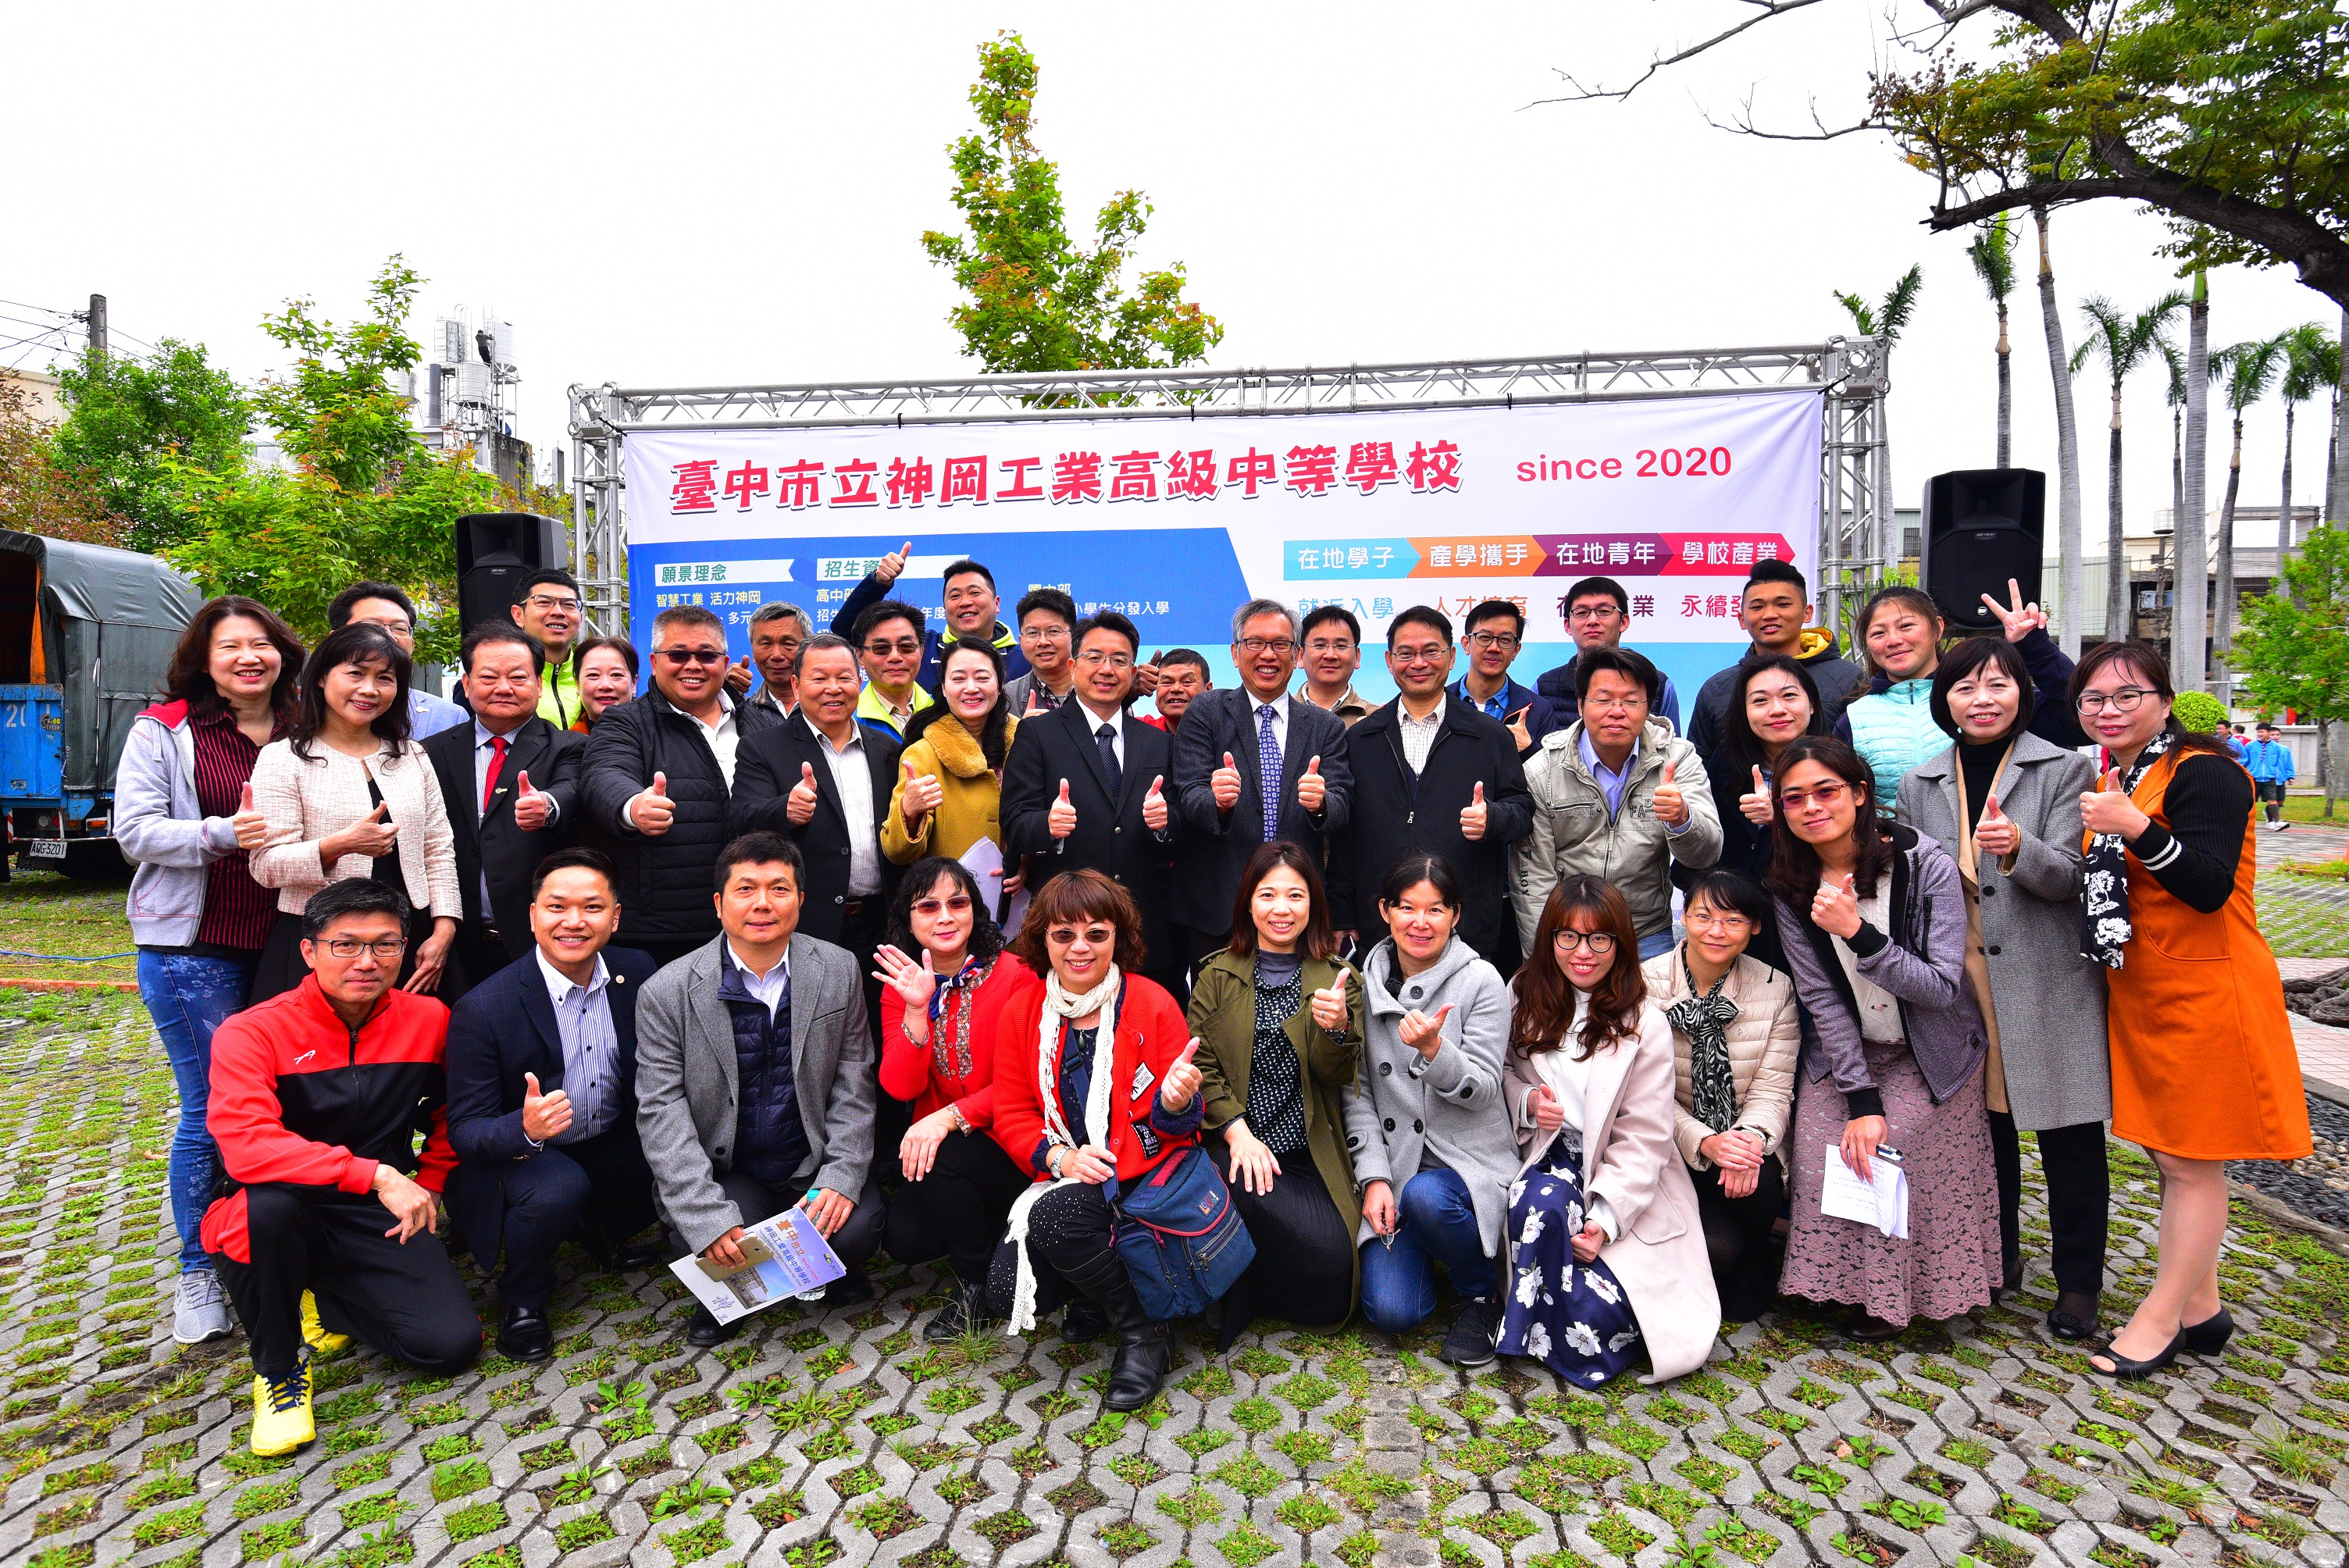 Kolaborasi antara Shengang Advanced Engineering dan University of Northampton di Inggris telah membantu menumbuhkan bakat industri yang luar biasa. (Foto diambil dari situs web Pemerintah Kota Taichung)